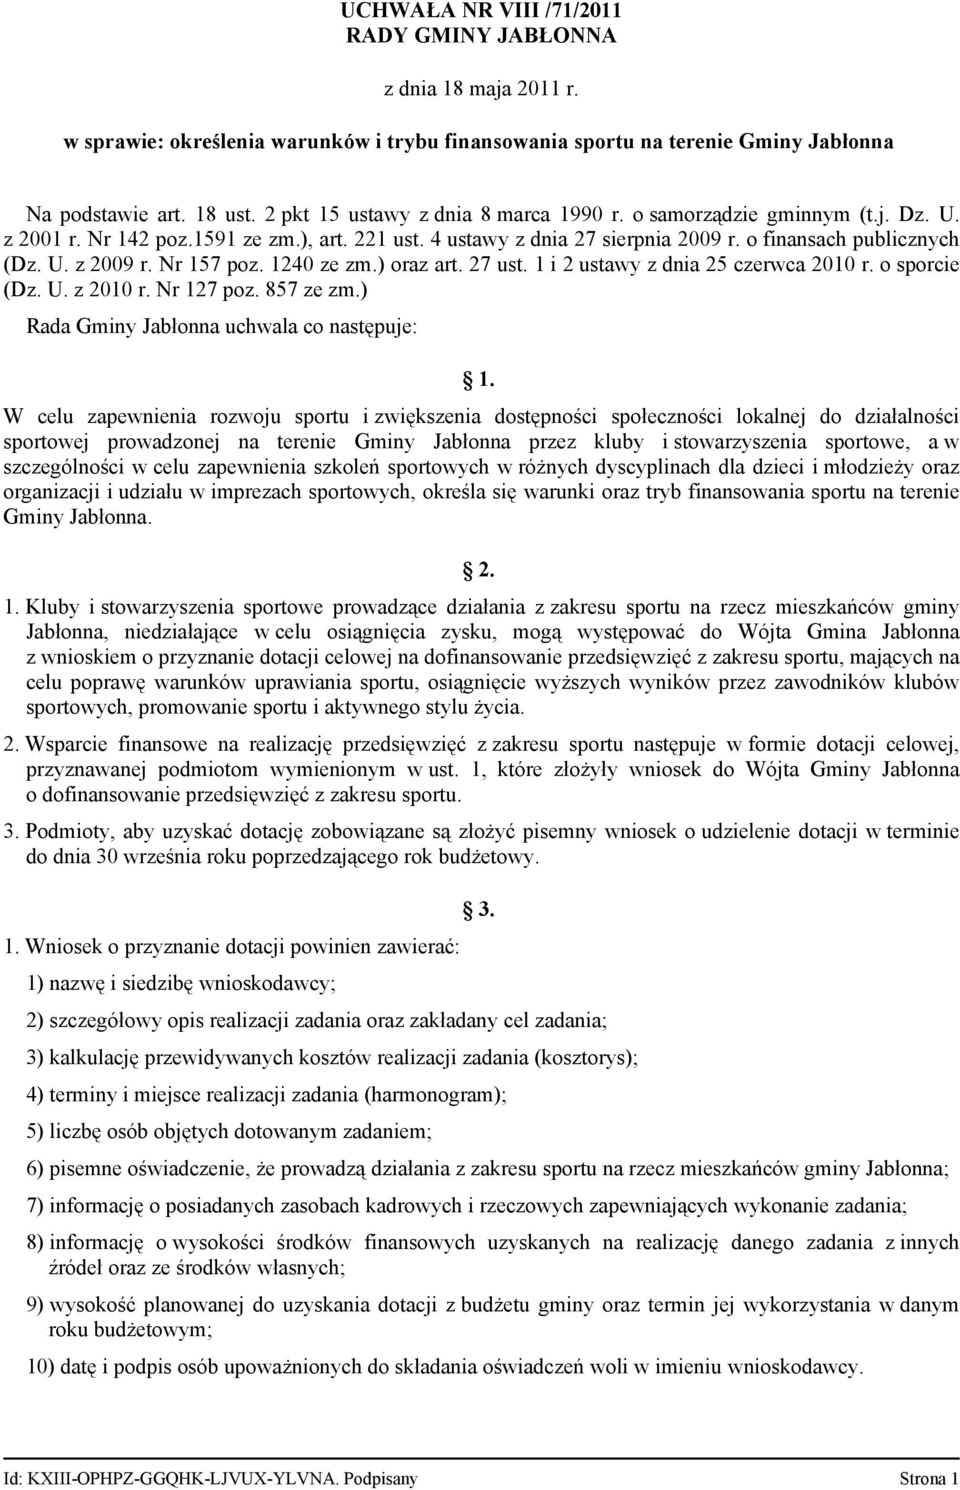 Nr 157 poz. 1240 ze zm.) oraz art. 27 ust. 1 i 2 ustawy z dnia 25 czerwca 2010 r. o sporcie (Dz. U. z 2010 r. Nr 127 poz. 857 ze zm.) Rada Gminy Jabłonna uchwala co następuje: 1.